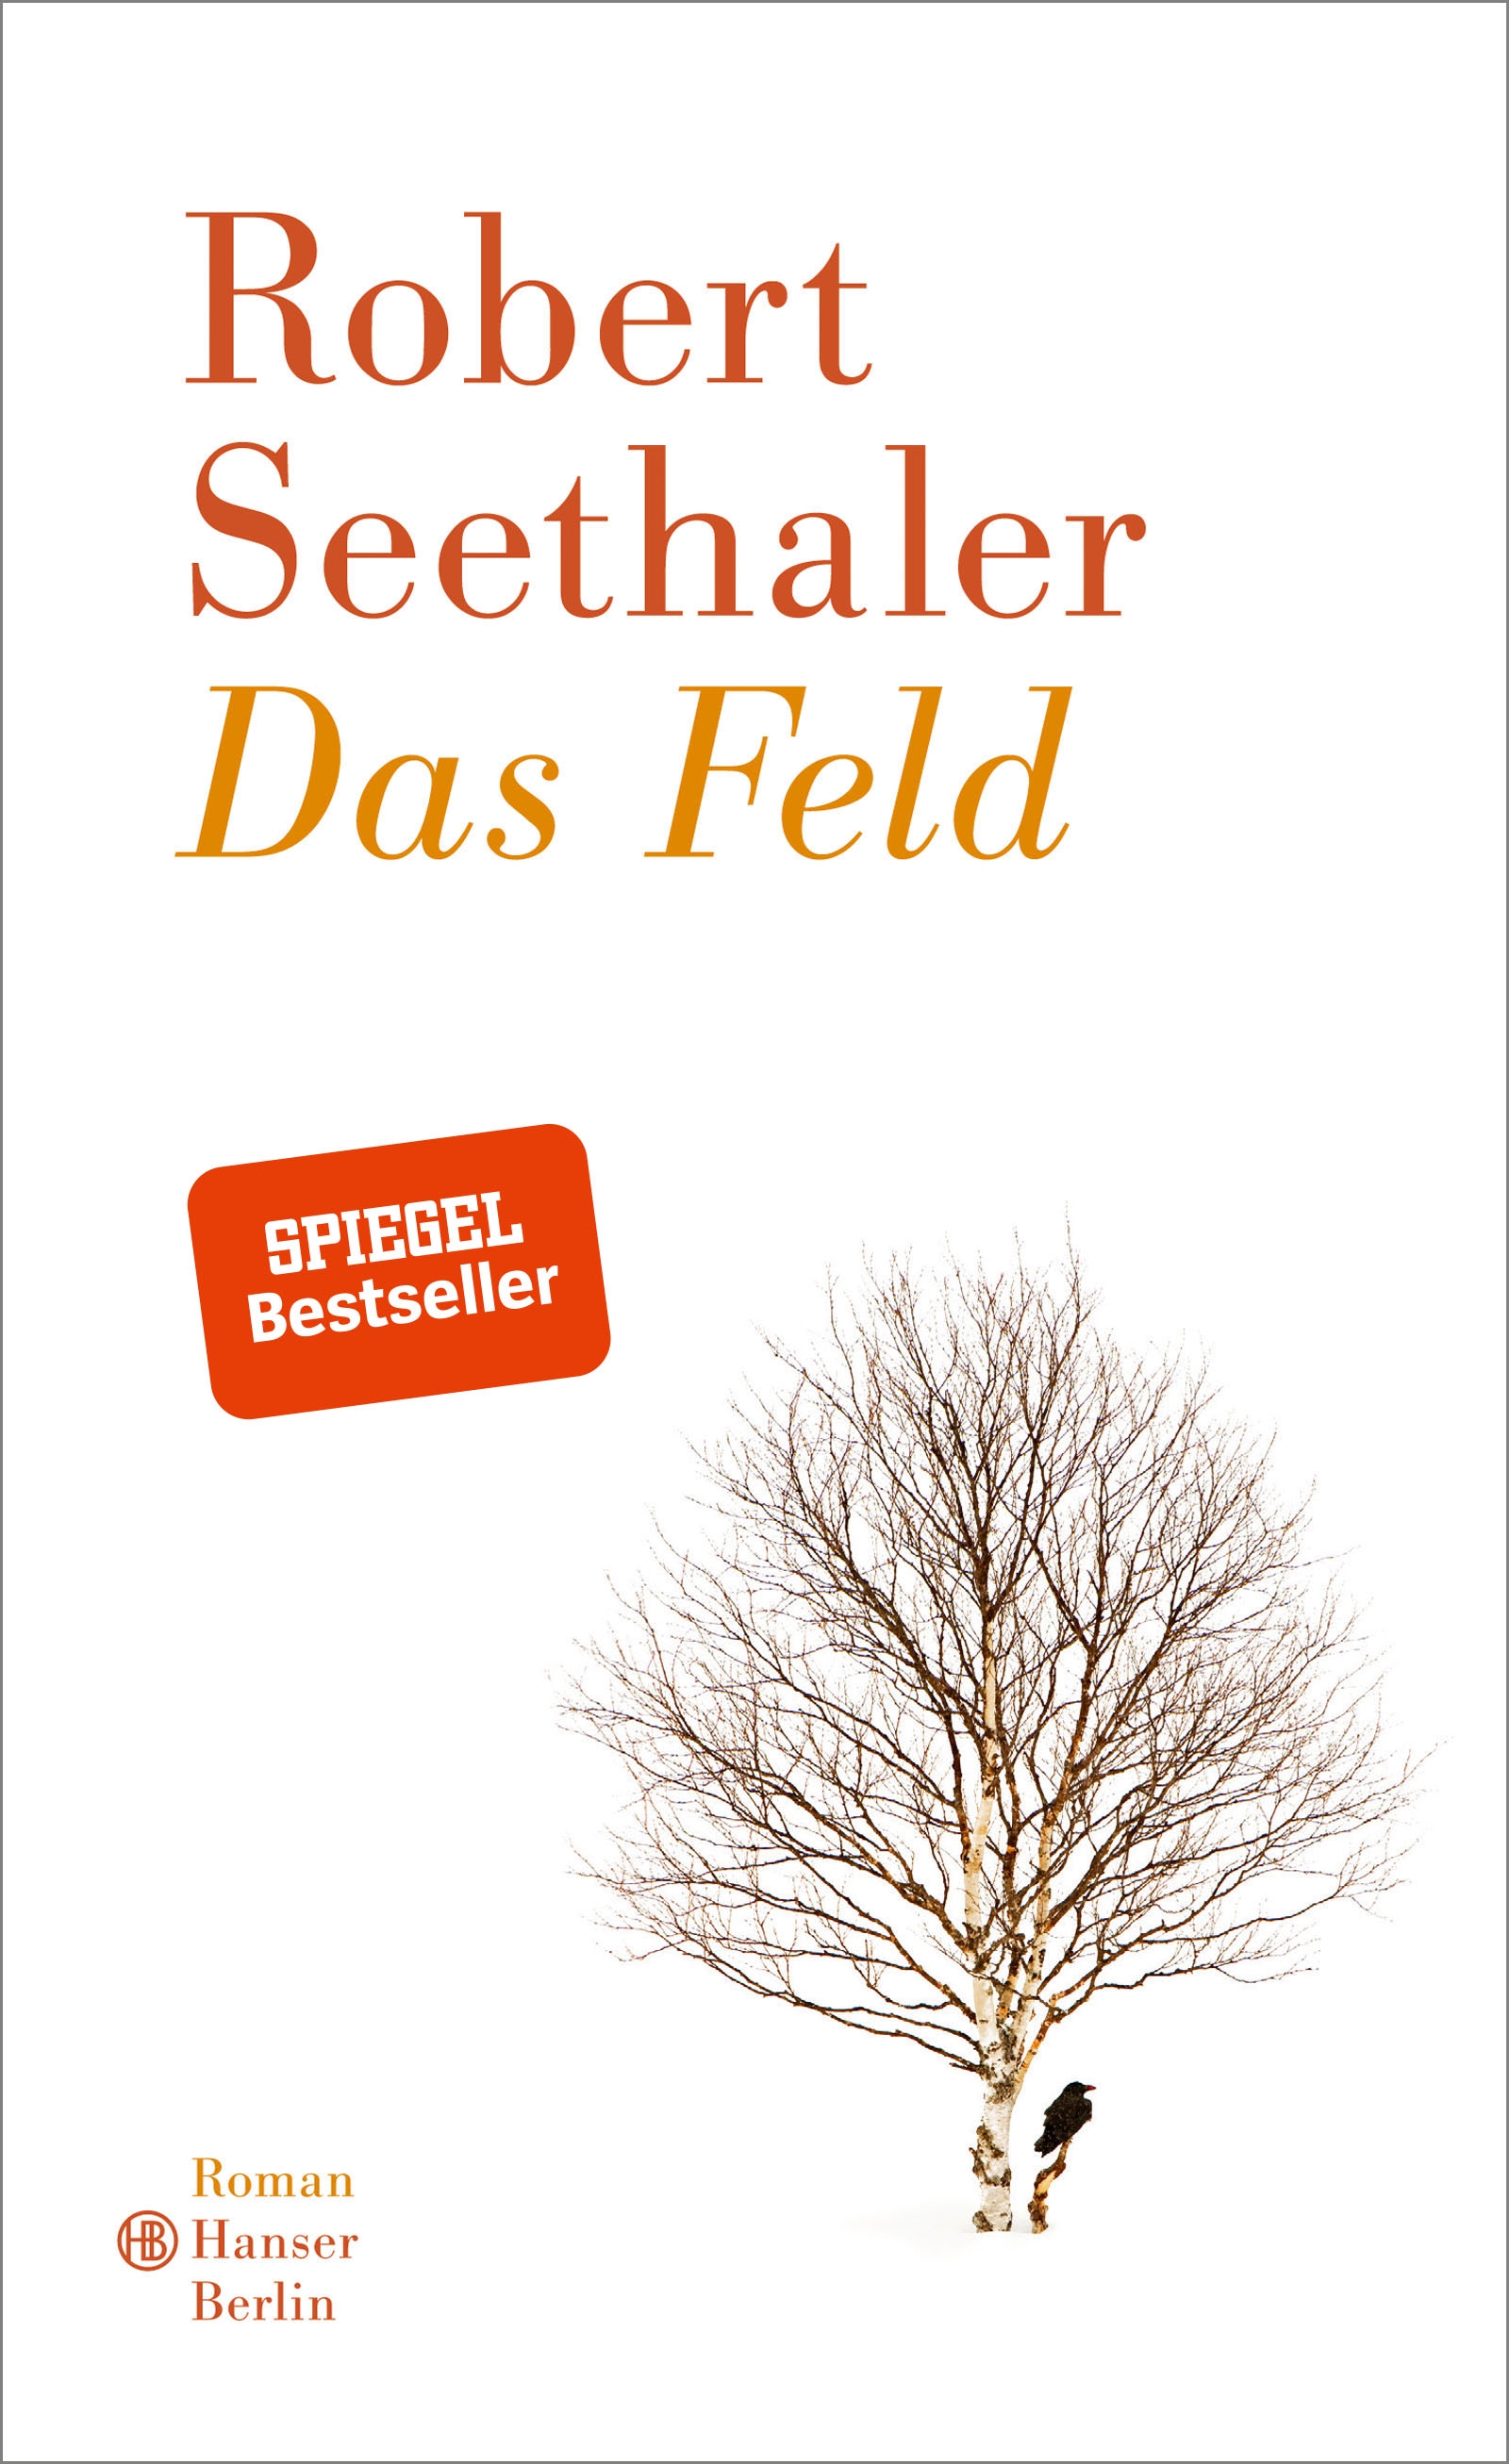 https://www.hanser-literaturverlage.de/buch/das-feld/978-3-446-26038-2/